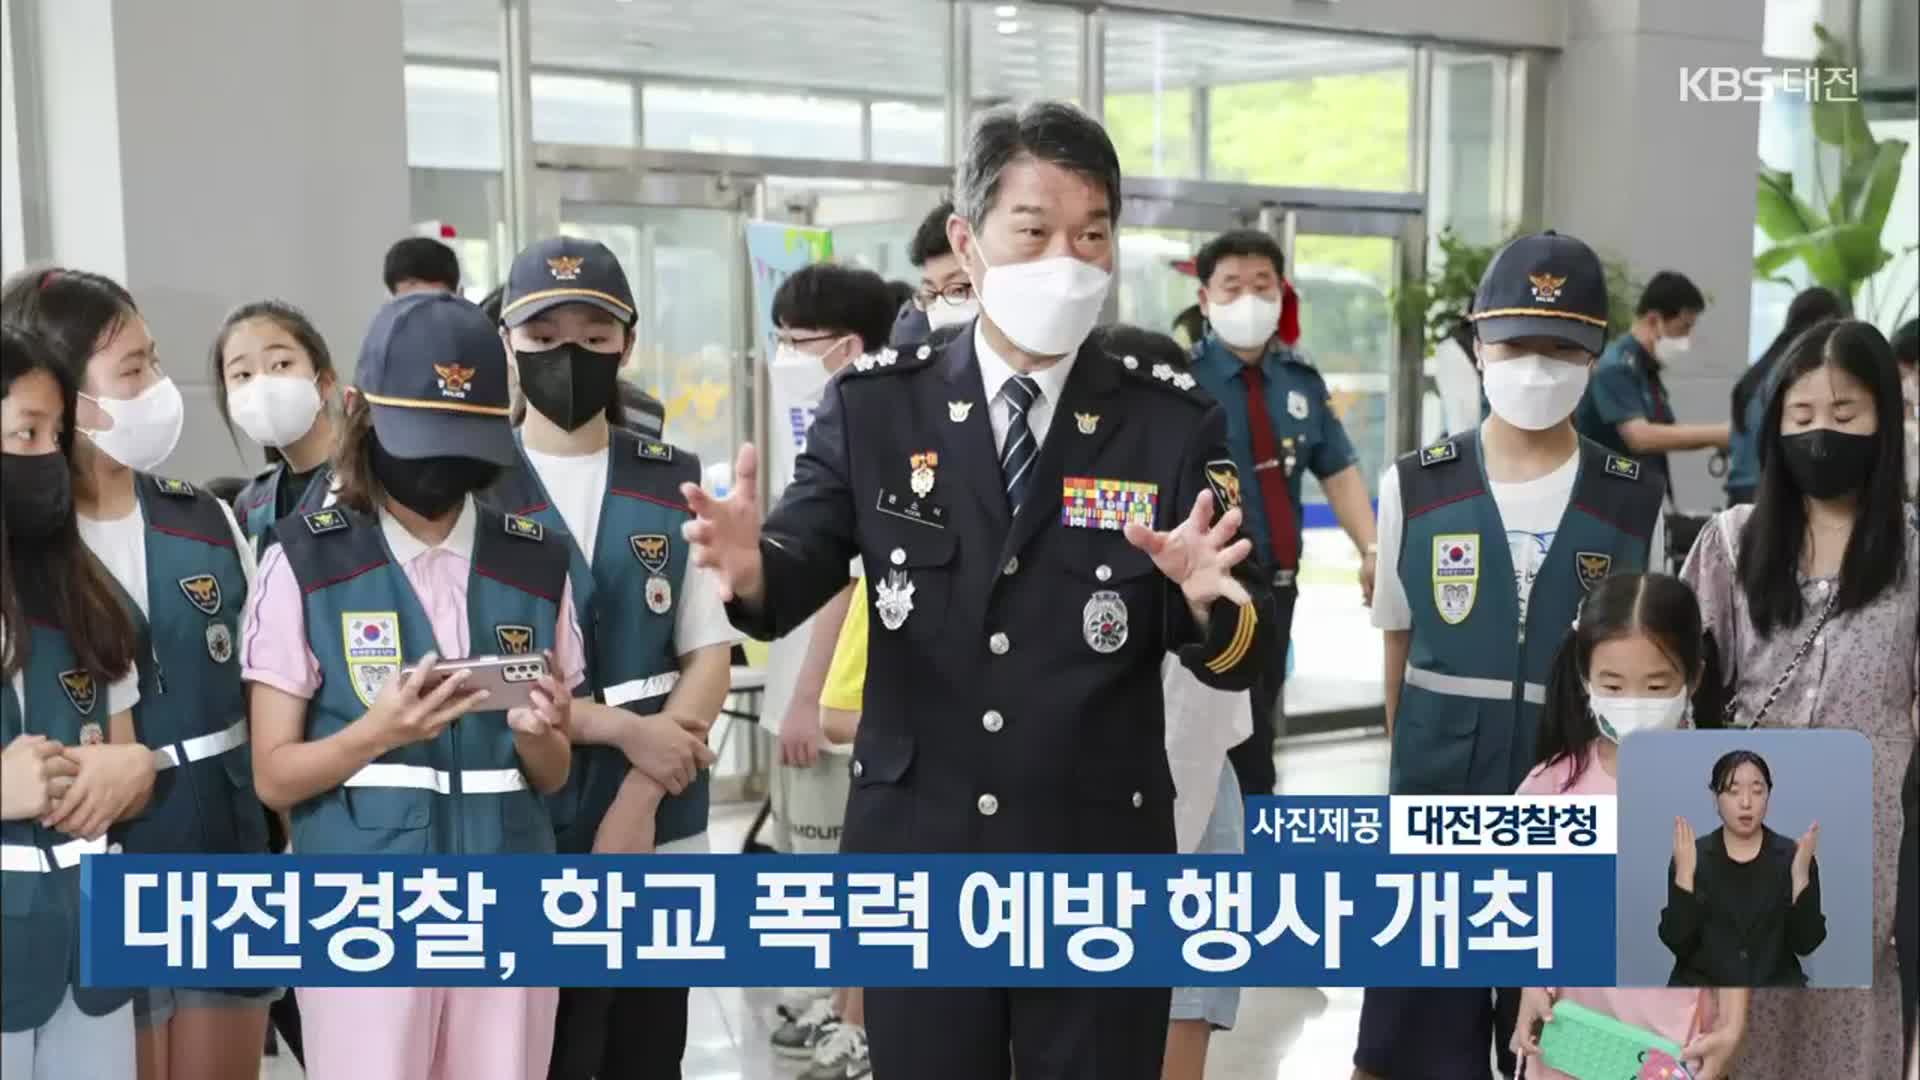 대전경찰, 학교 폭력 예방 행사 개최